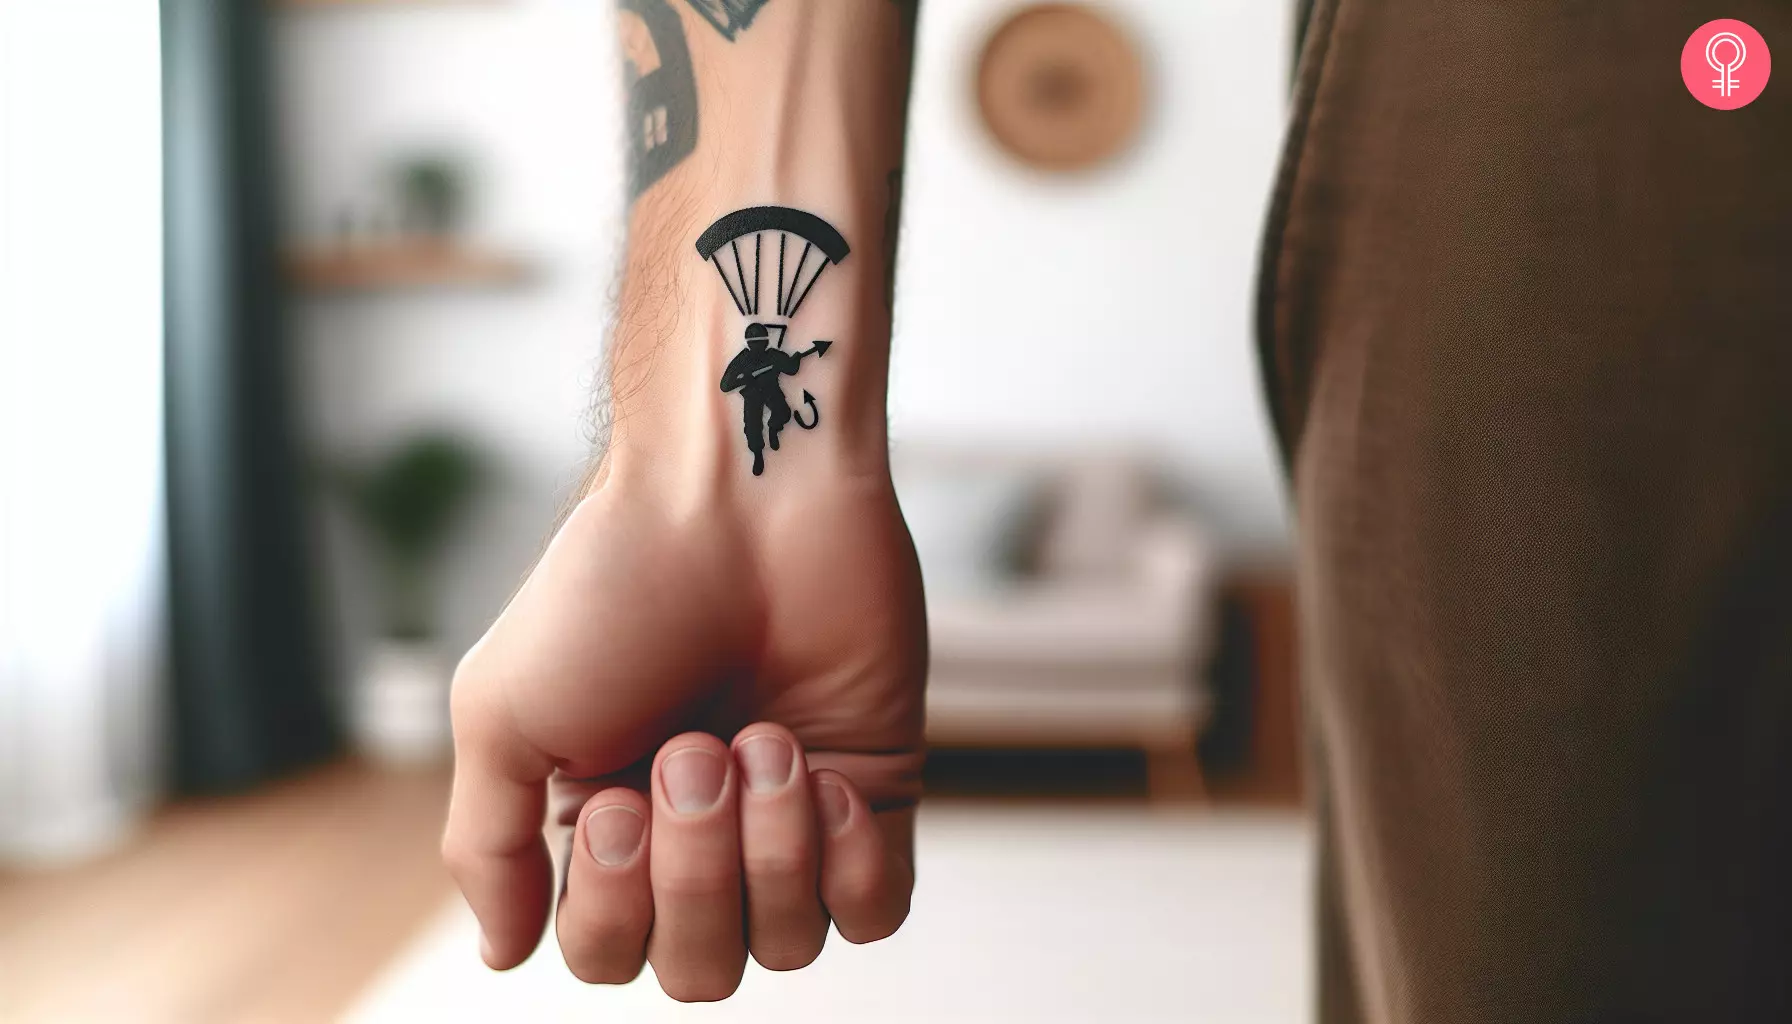 A paratrooper devil tattoo on the wrist